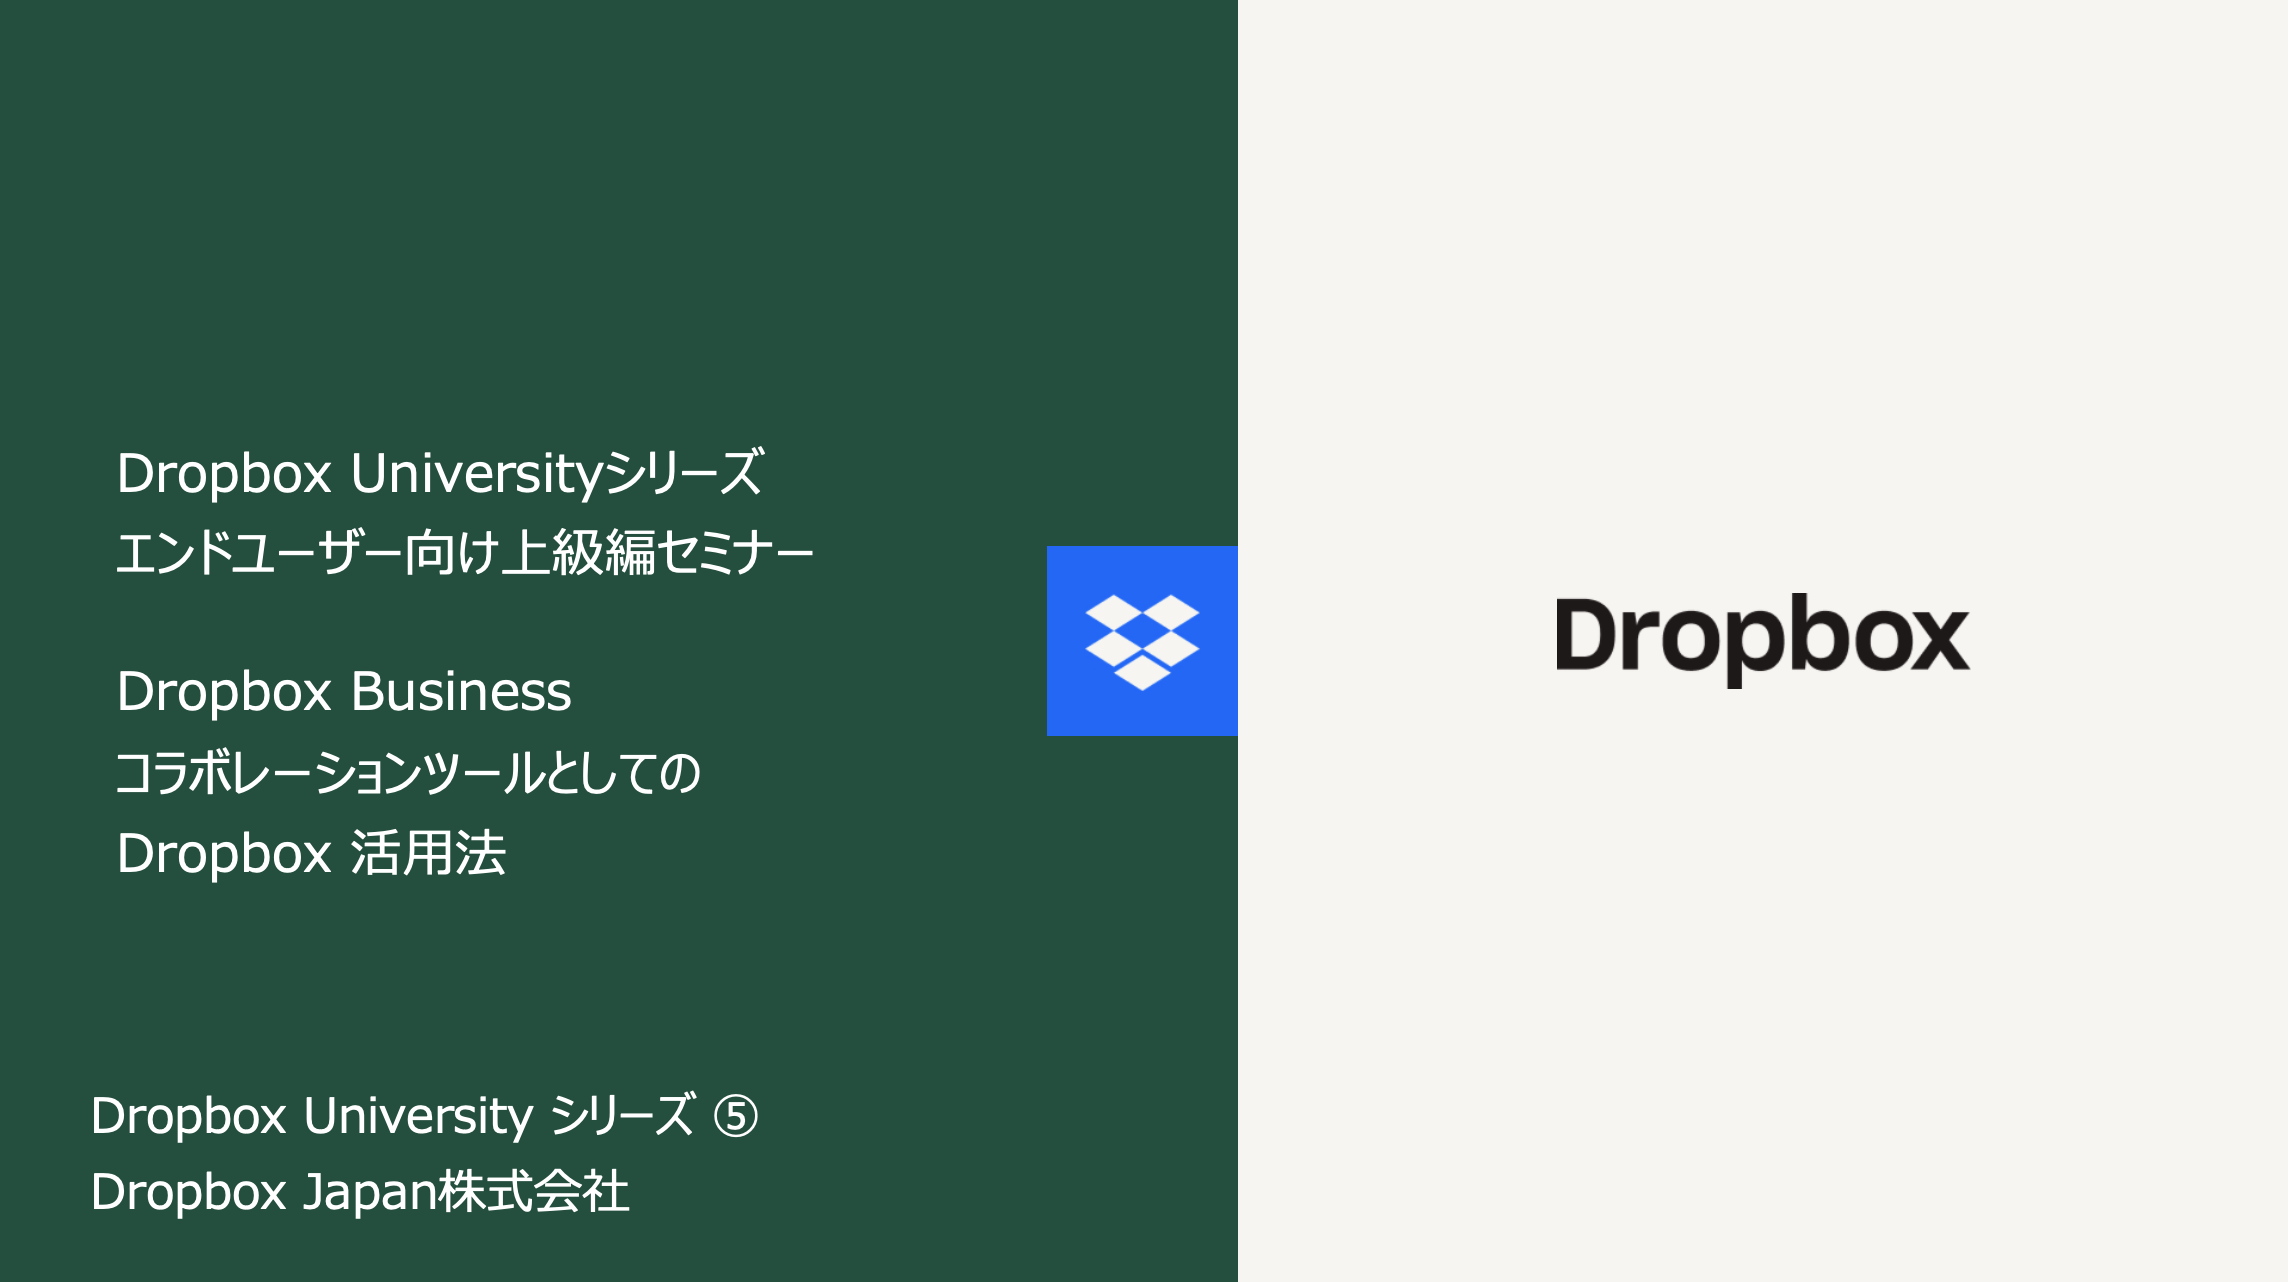 Dropbox University 5 ユーザー向け上級編